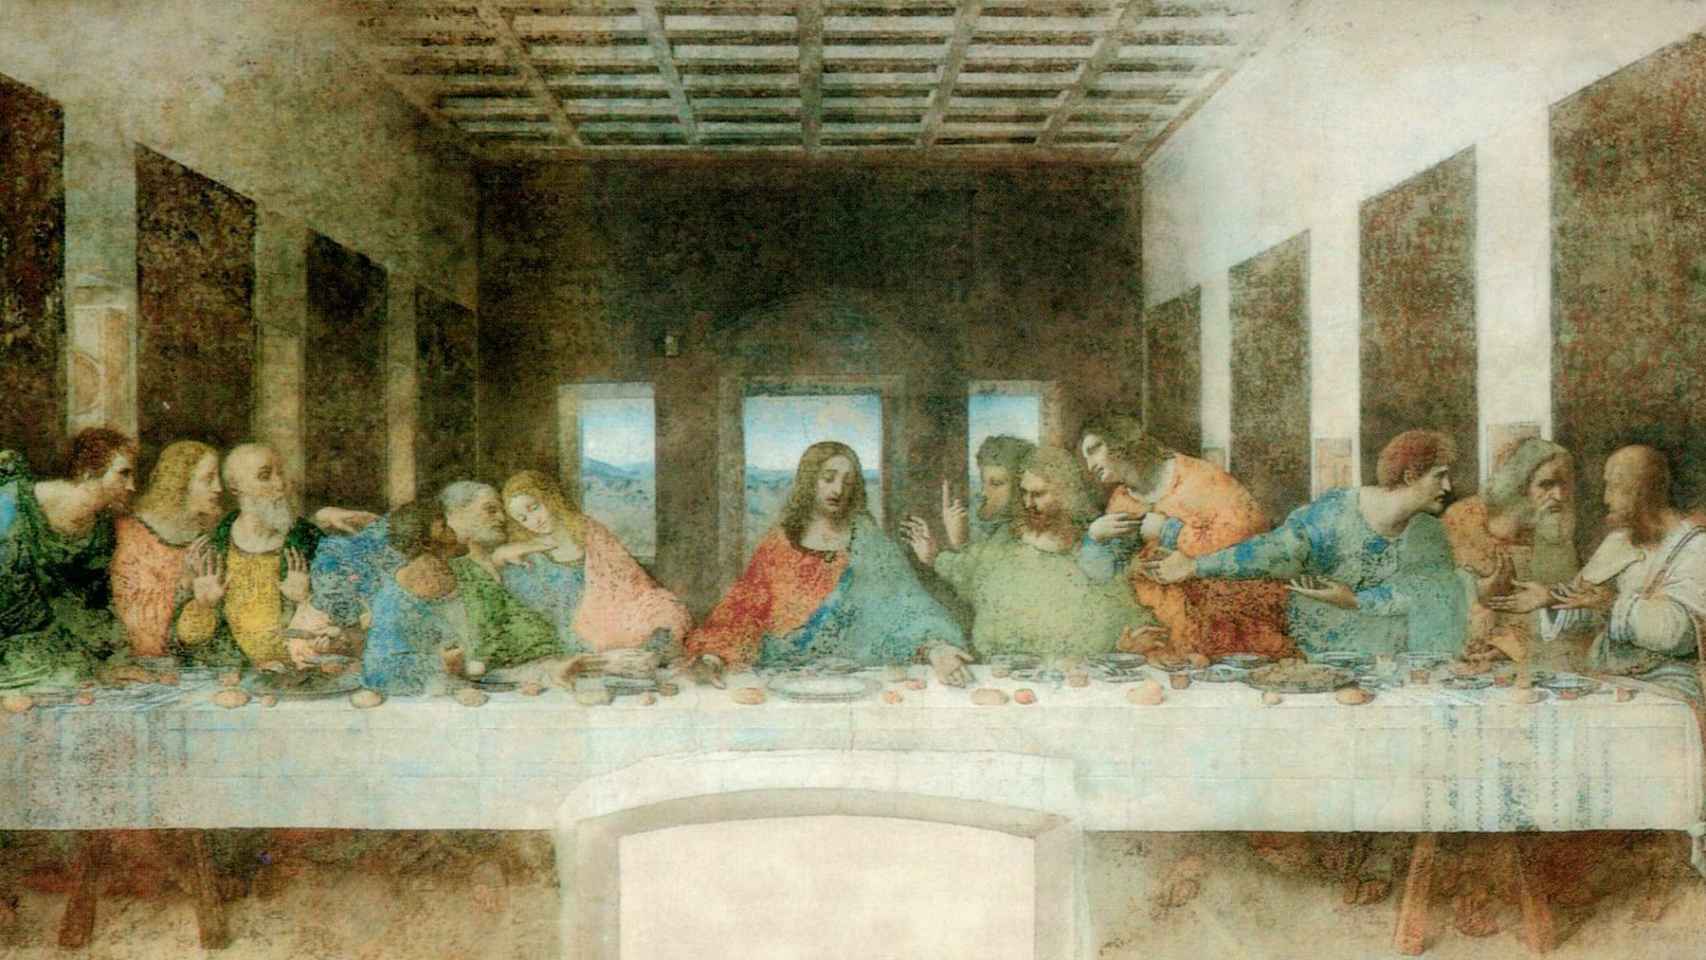 El cuatro atribuido es una réplica de La última cena, de Da Vinci.